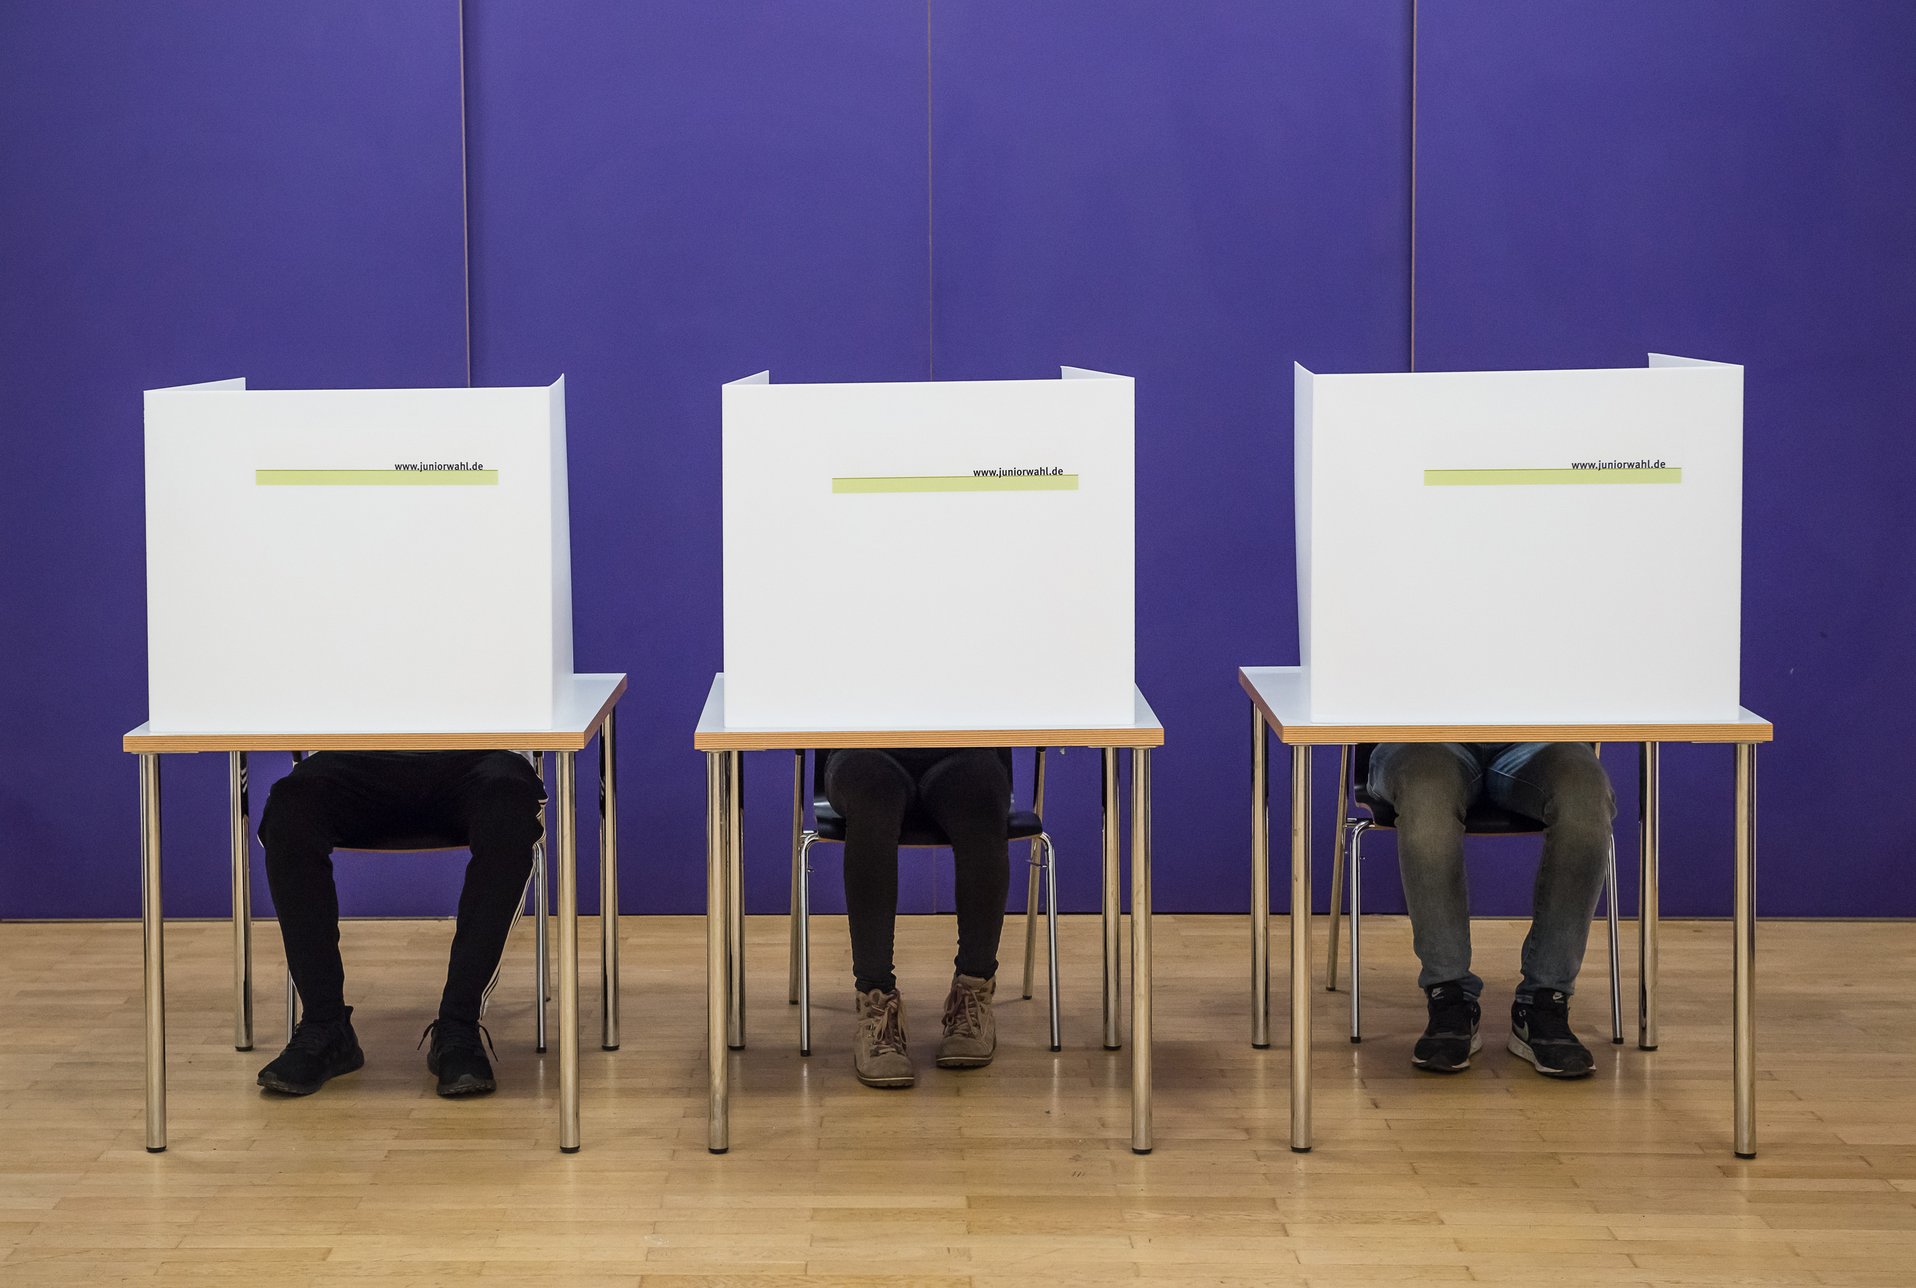 drei Wähler*innen verborgen hinter Wahlkabinen